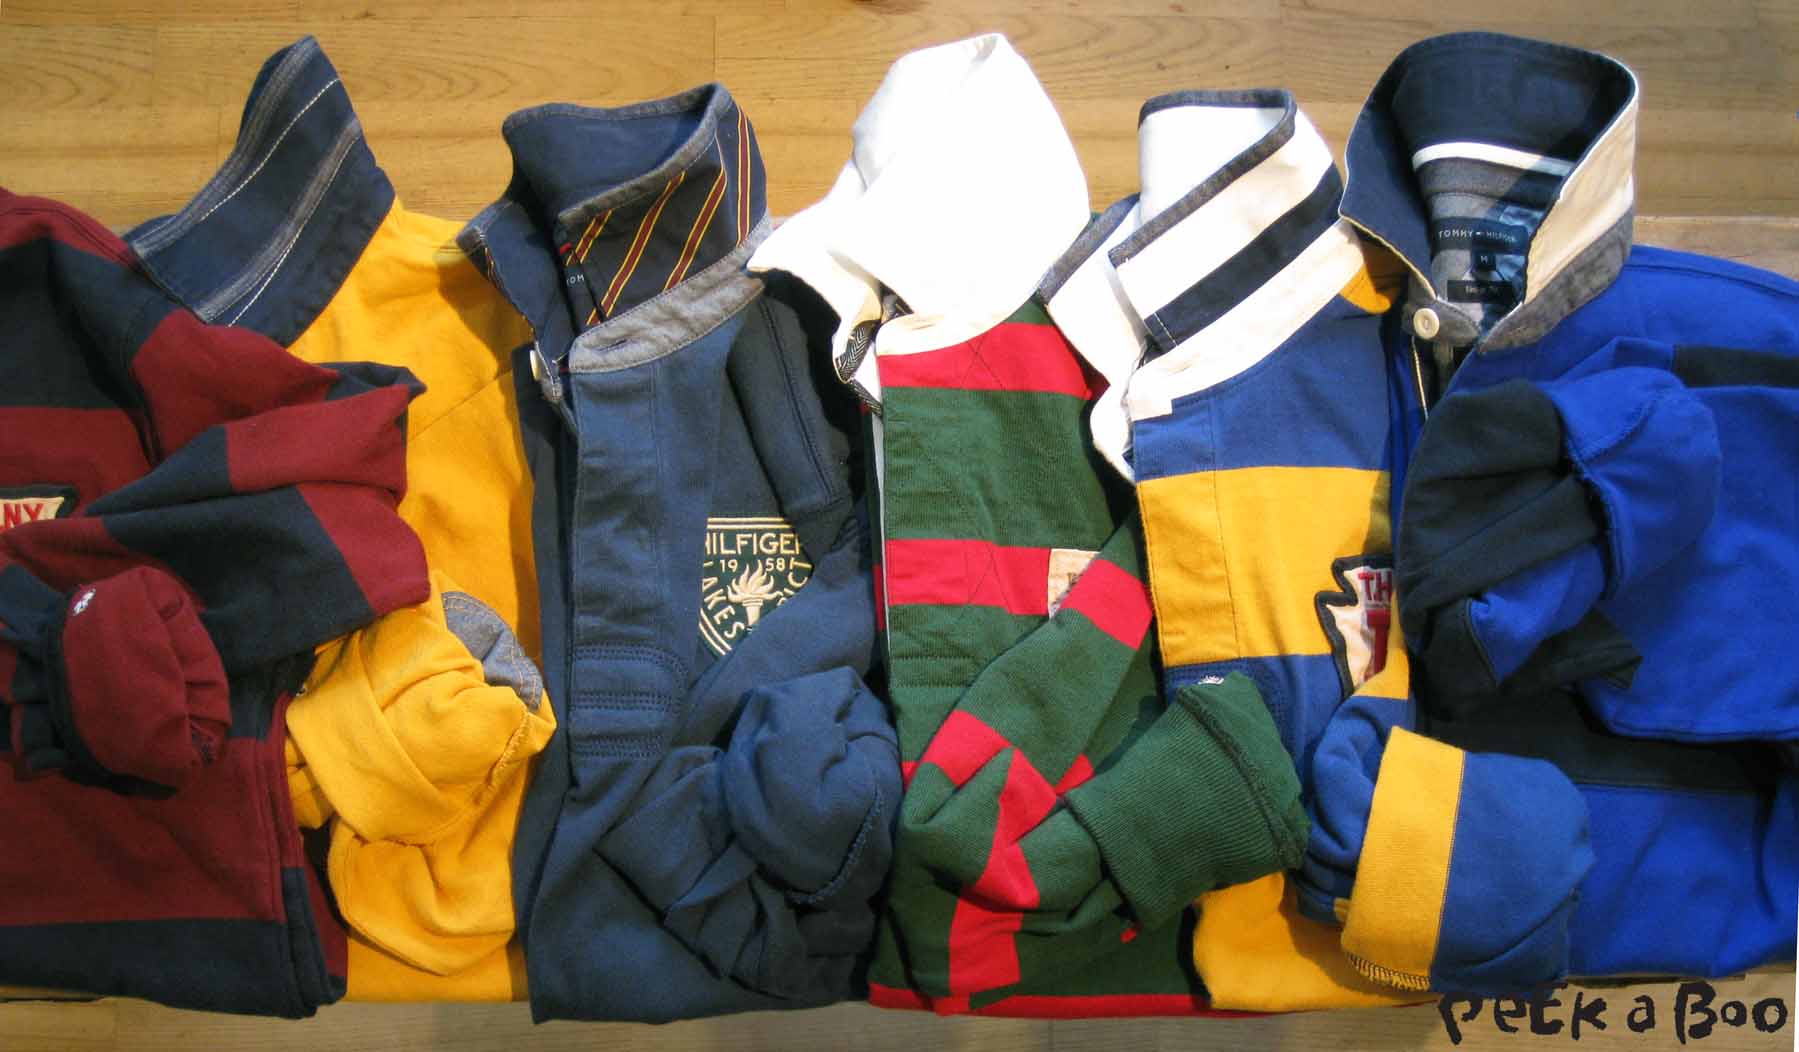 Rugby trøjerne som SKAL være med i Hilfiger's kollektioner...flotte farver og sporty striber...